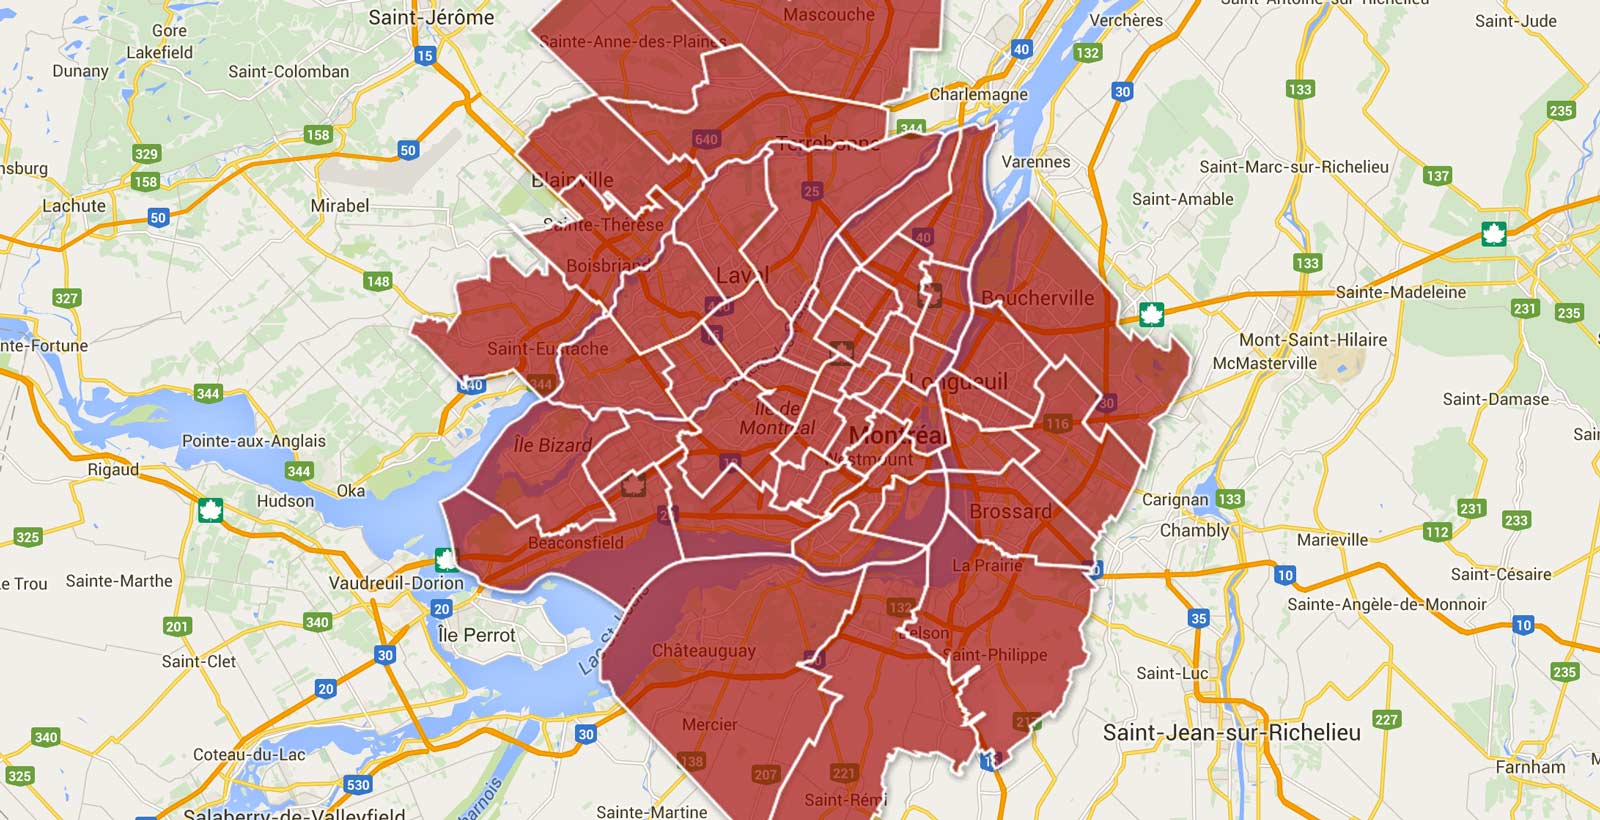 La région de Montréal divisée par circonscriptions. Uber propose une carte identique pour la région de Québec.